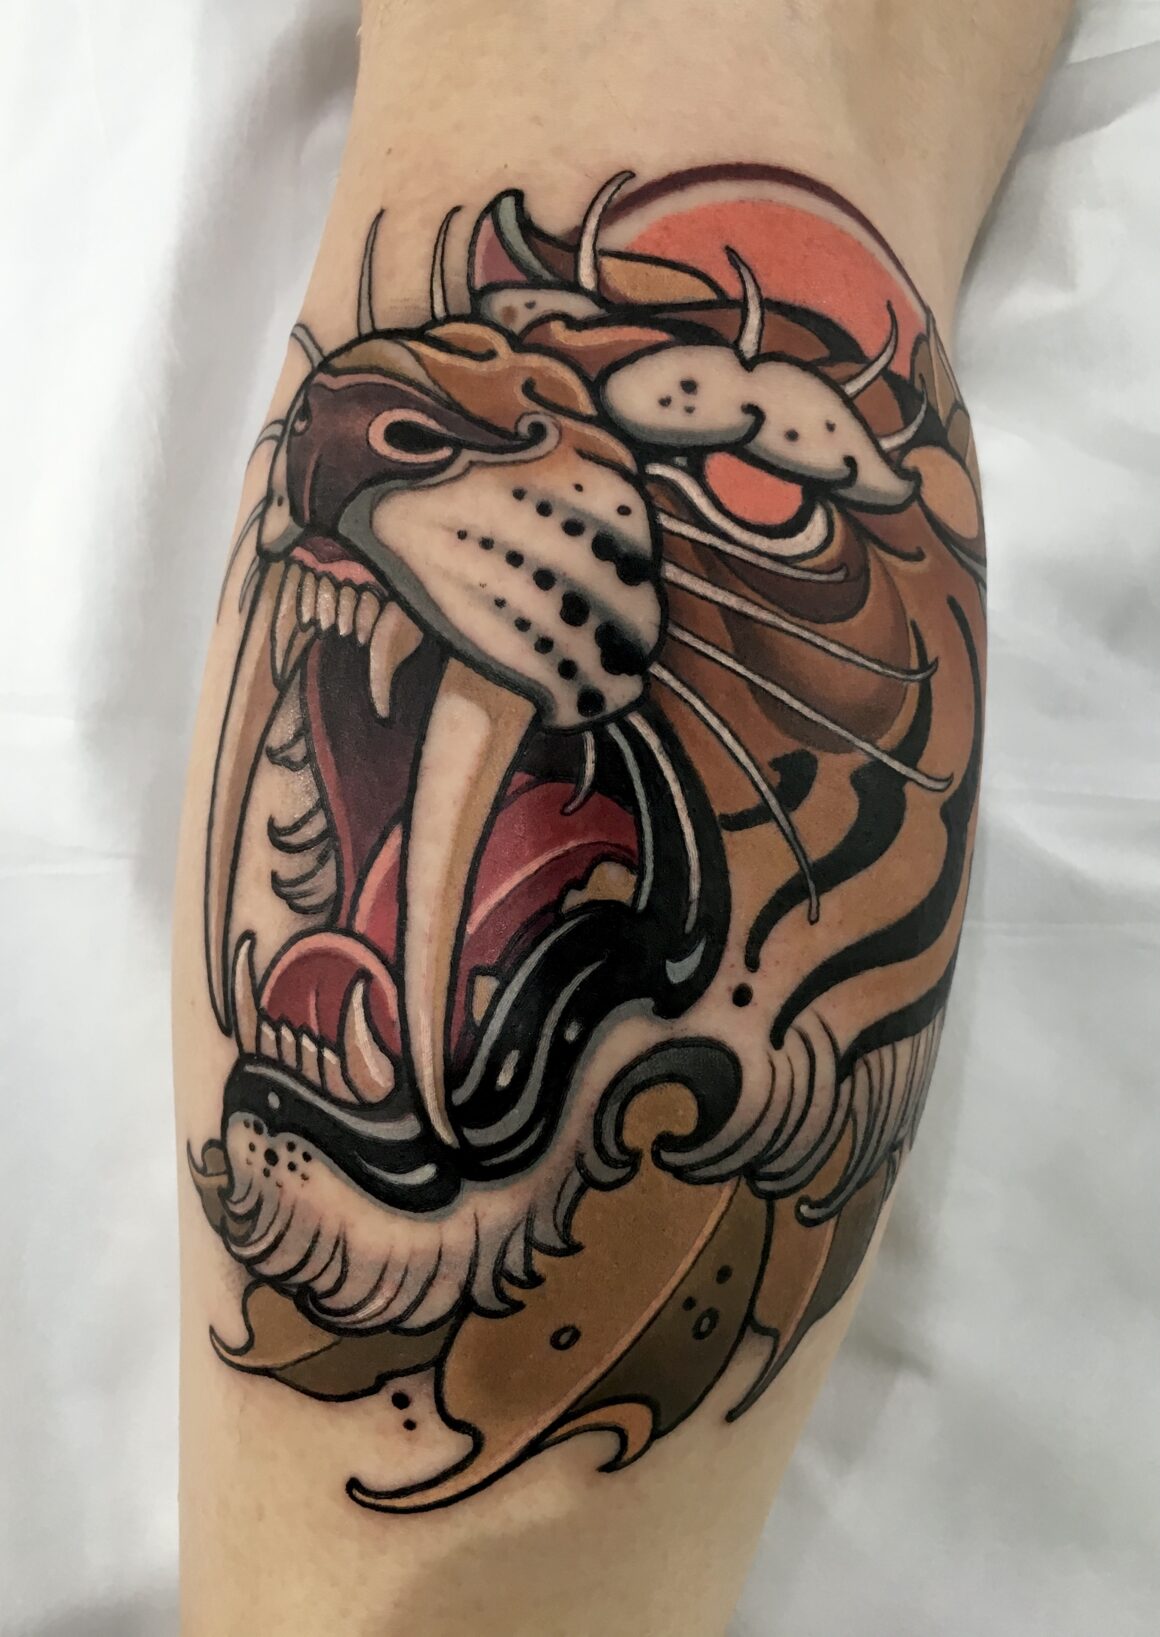 Sabertooth skull by Kirsten @ Black Lotus Tattoo, Hanover MD : r/tattoos